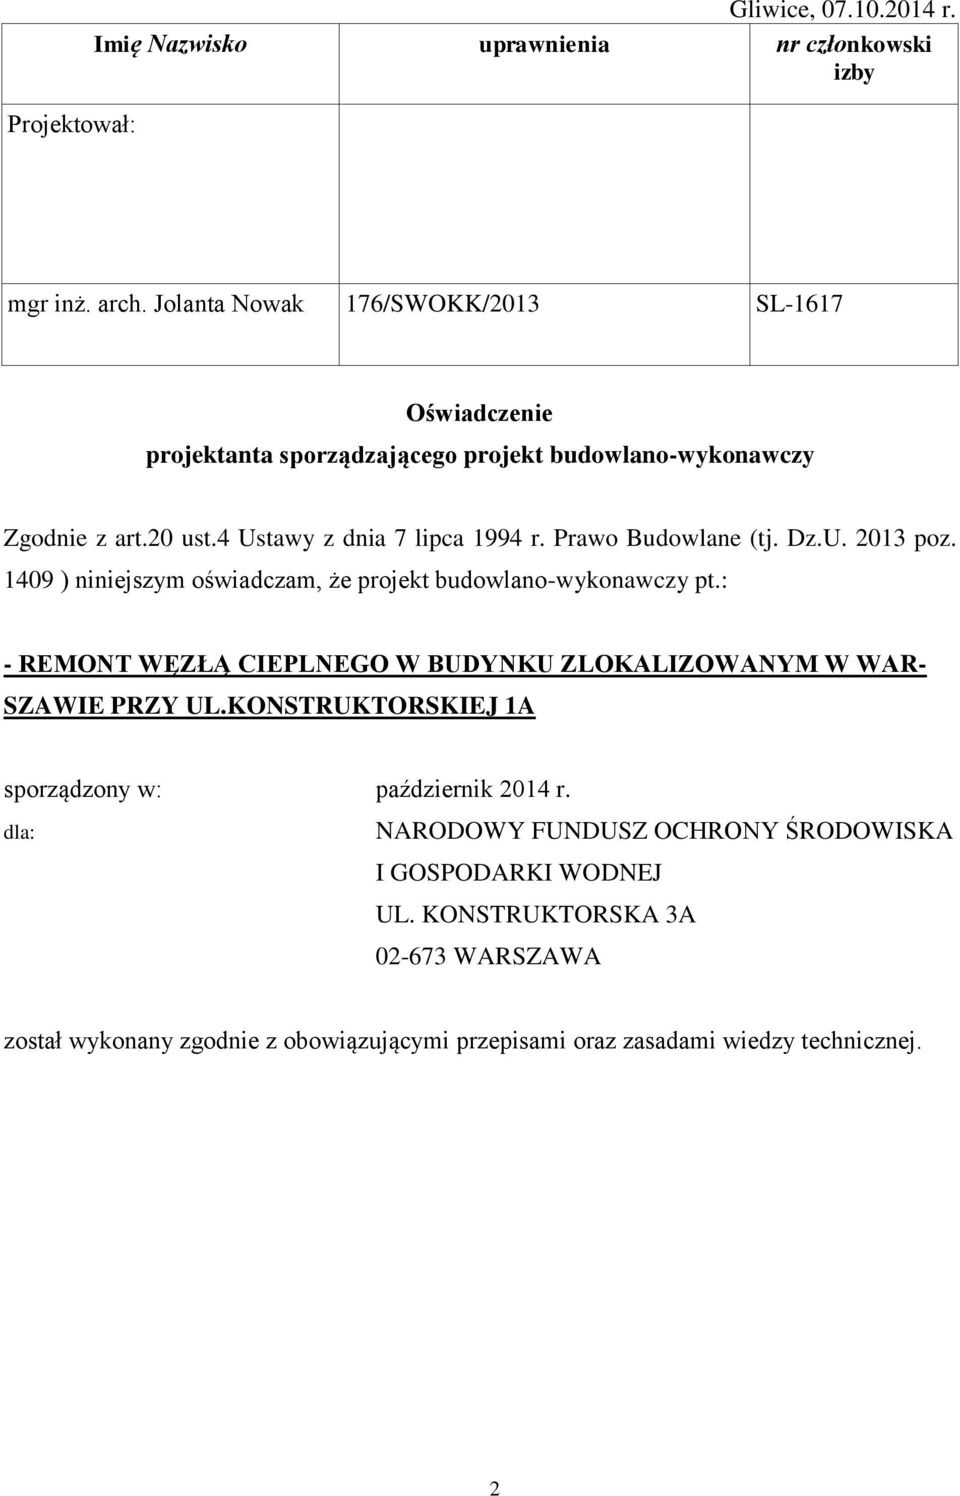 Prawo Budowlane (tj. Dz.U. 2013 poz. 1409 ) niniejszym oświadczam, że projekt budowlano-wykonawczy pt.